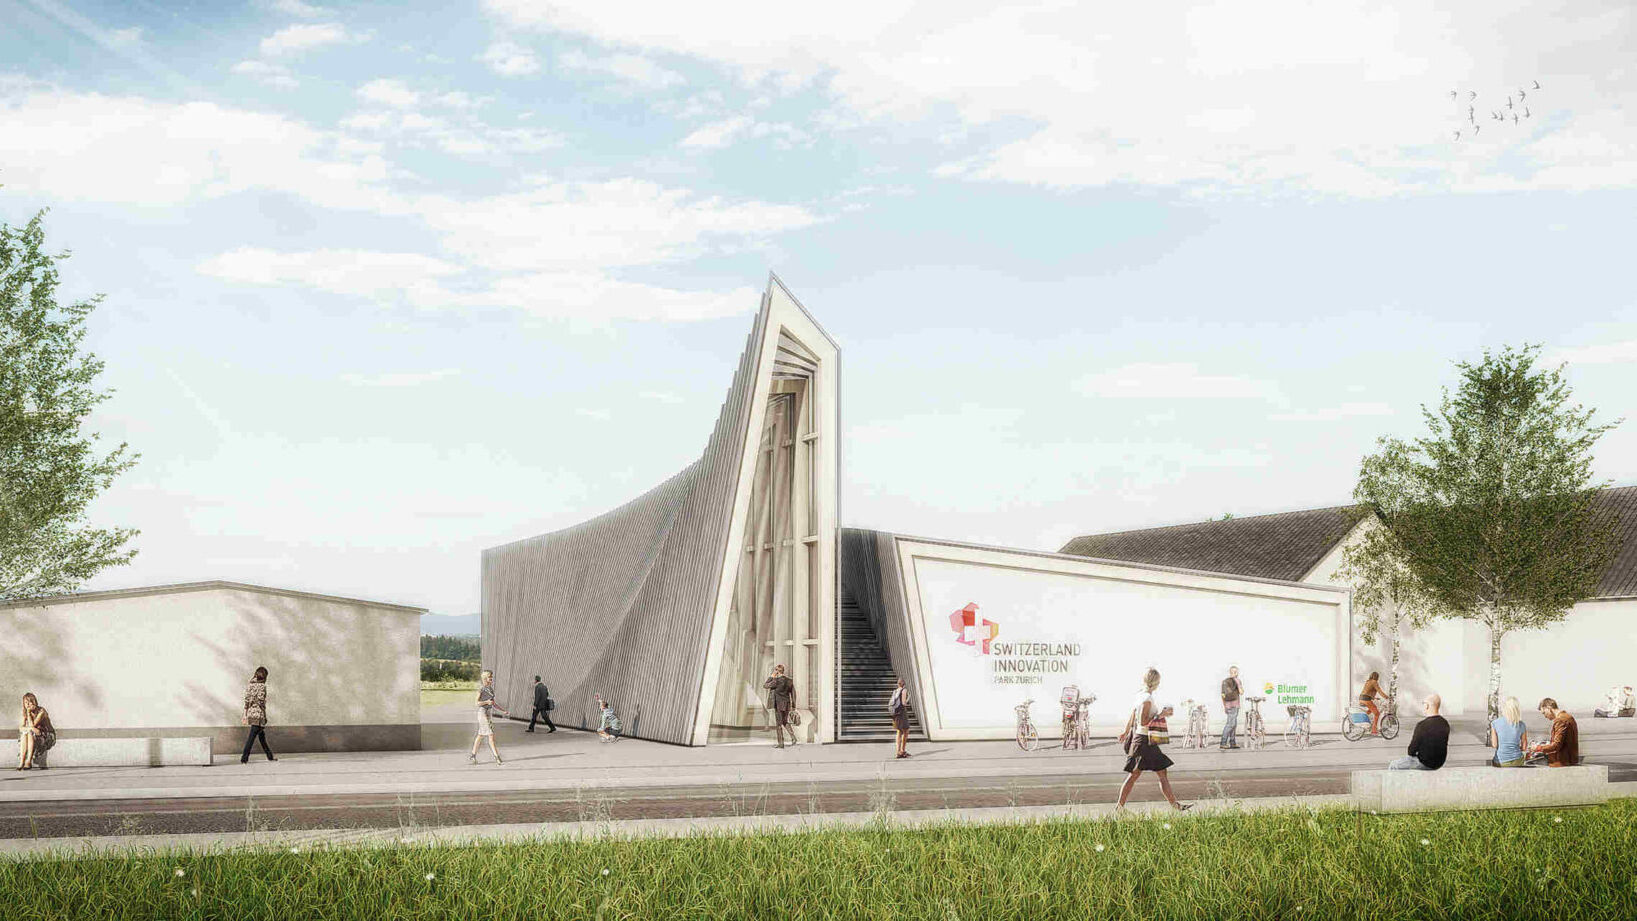 Švajčiarsky inovačný park Zurich: vstup do pavilónu